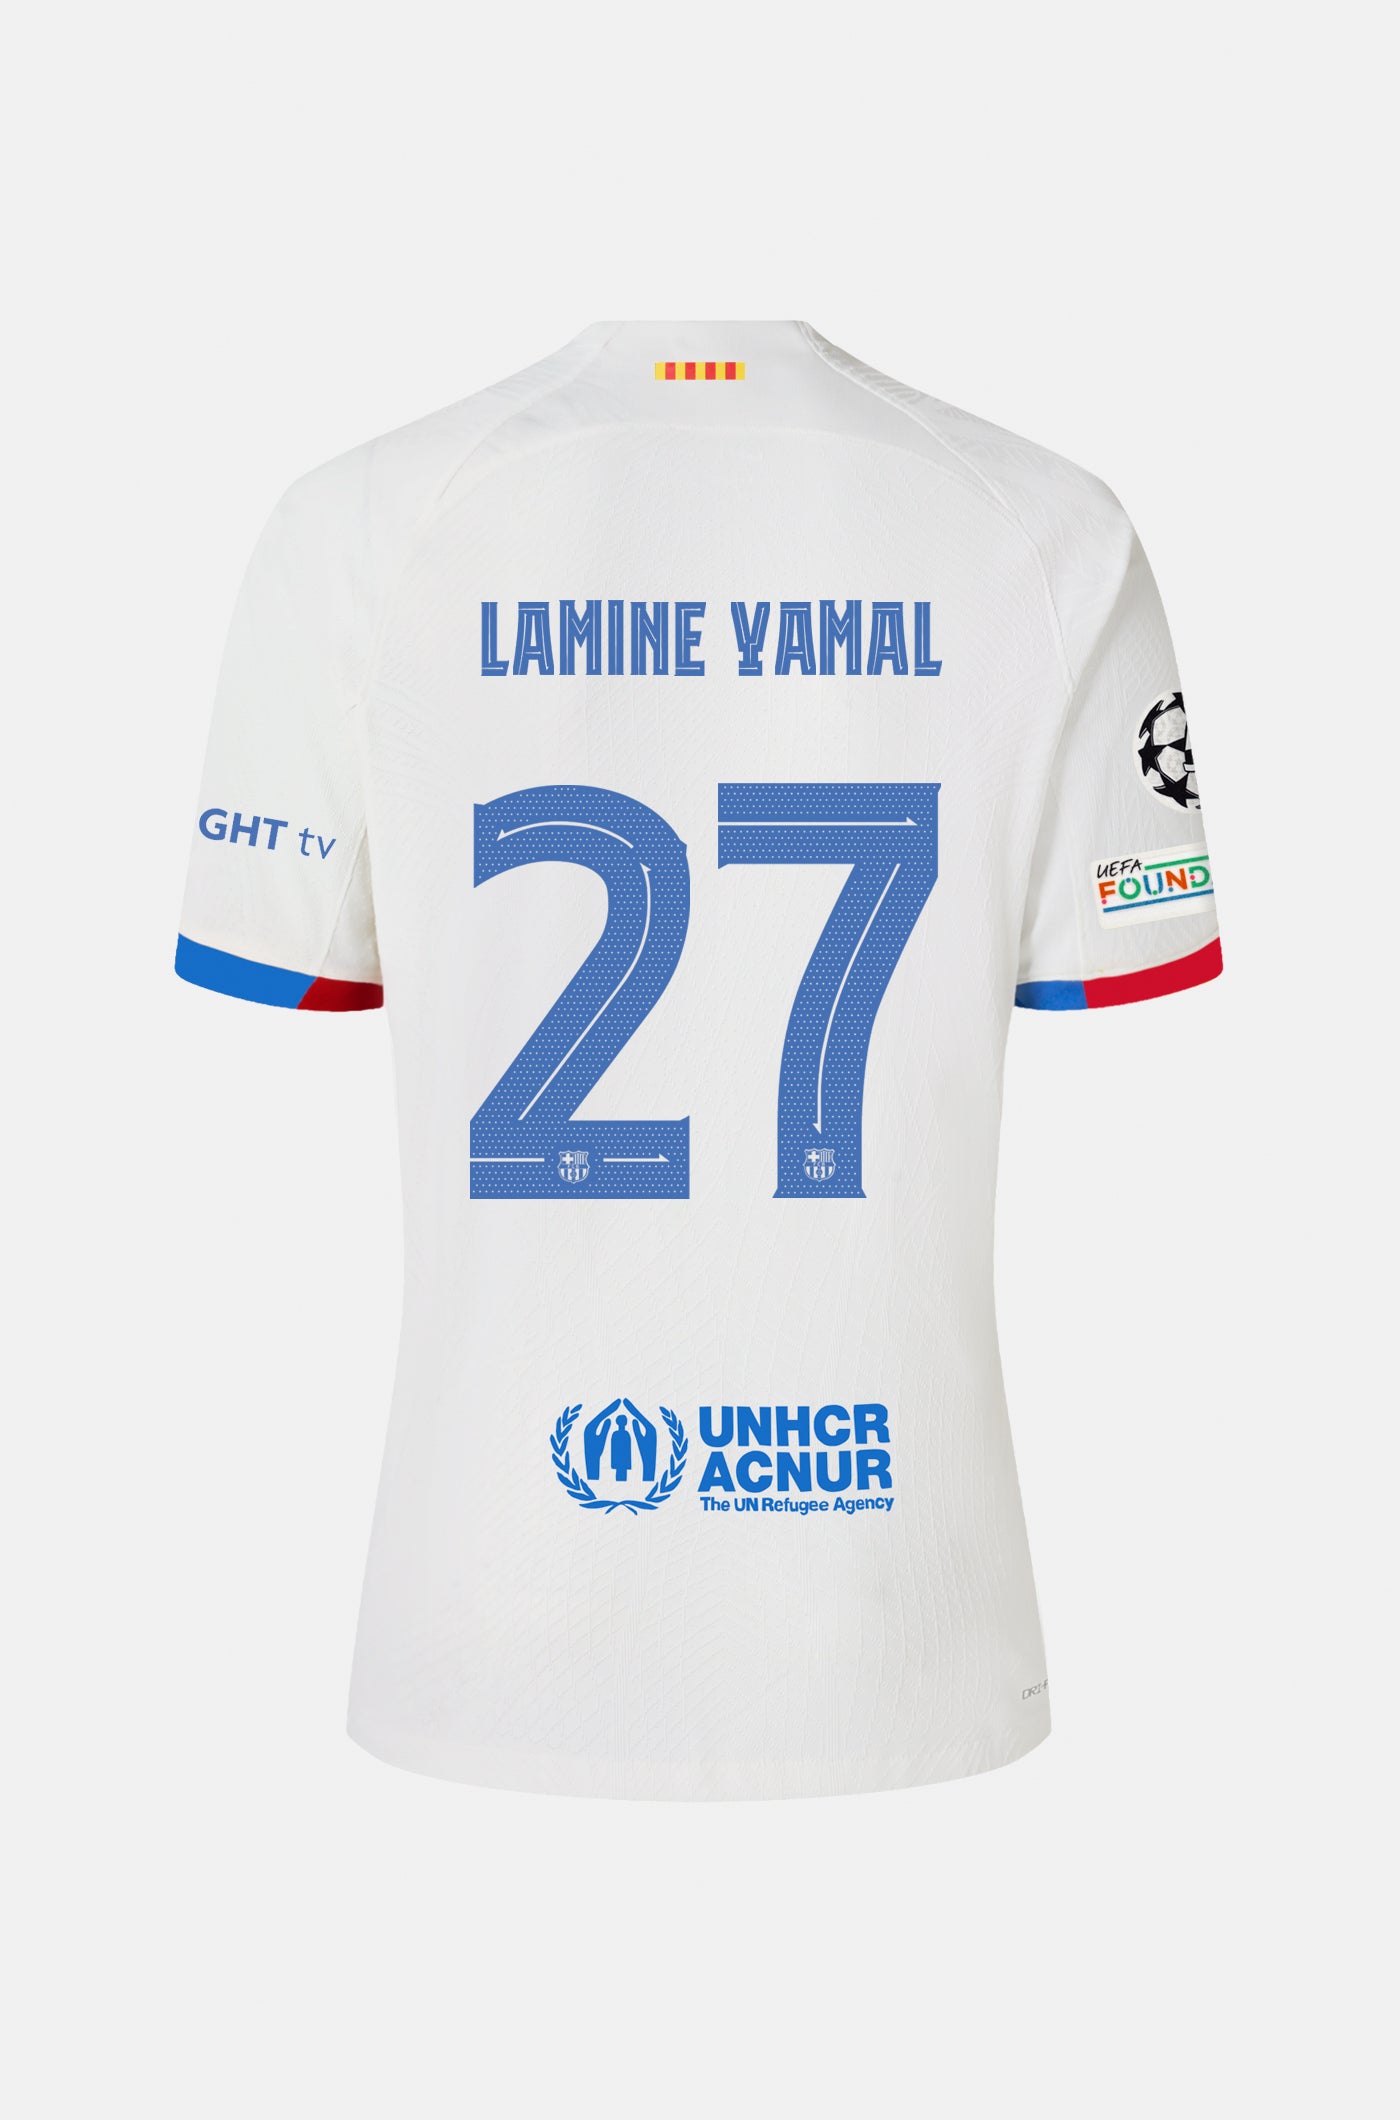 UCL FC Barcelona away shirt 23/24 - LAMINE YAMAL